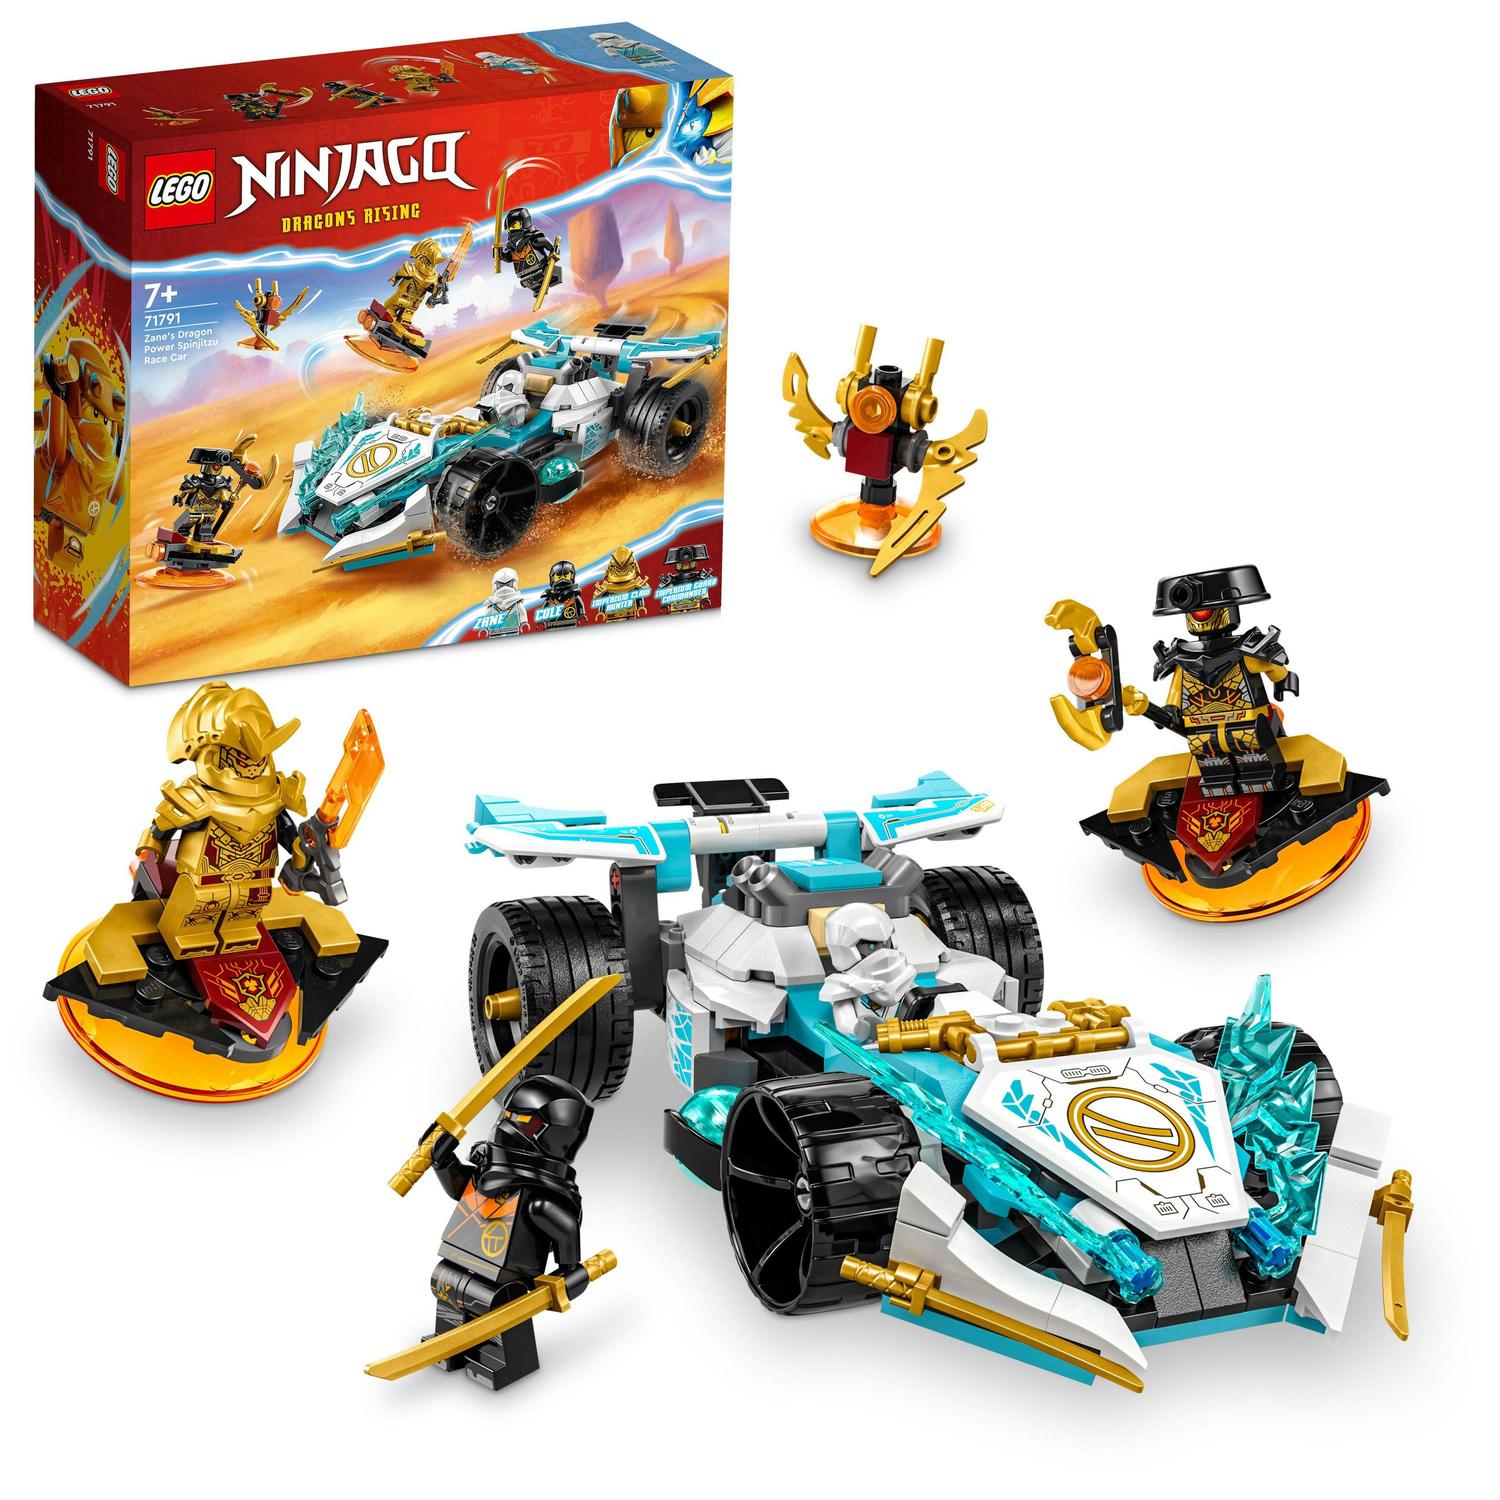 Fotografie LEGO® Ninjago - Masina de curse Spinjitzu a lui Zane cu puterea dragonului 71791, 307 piese